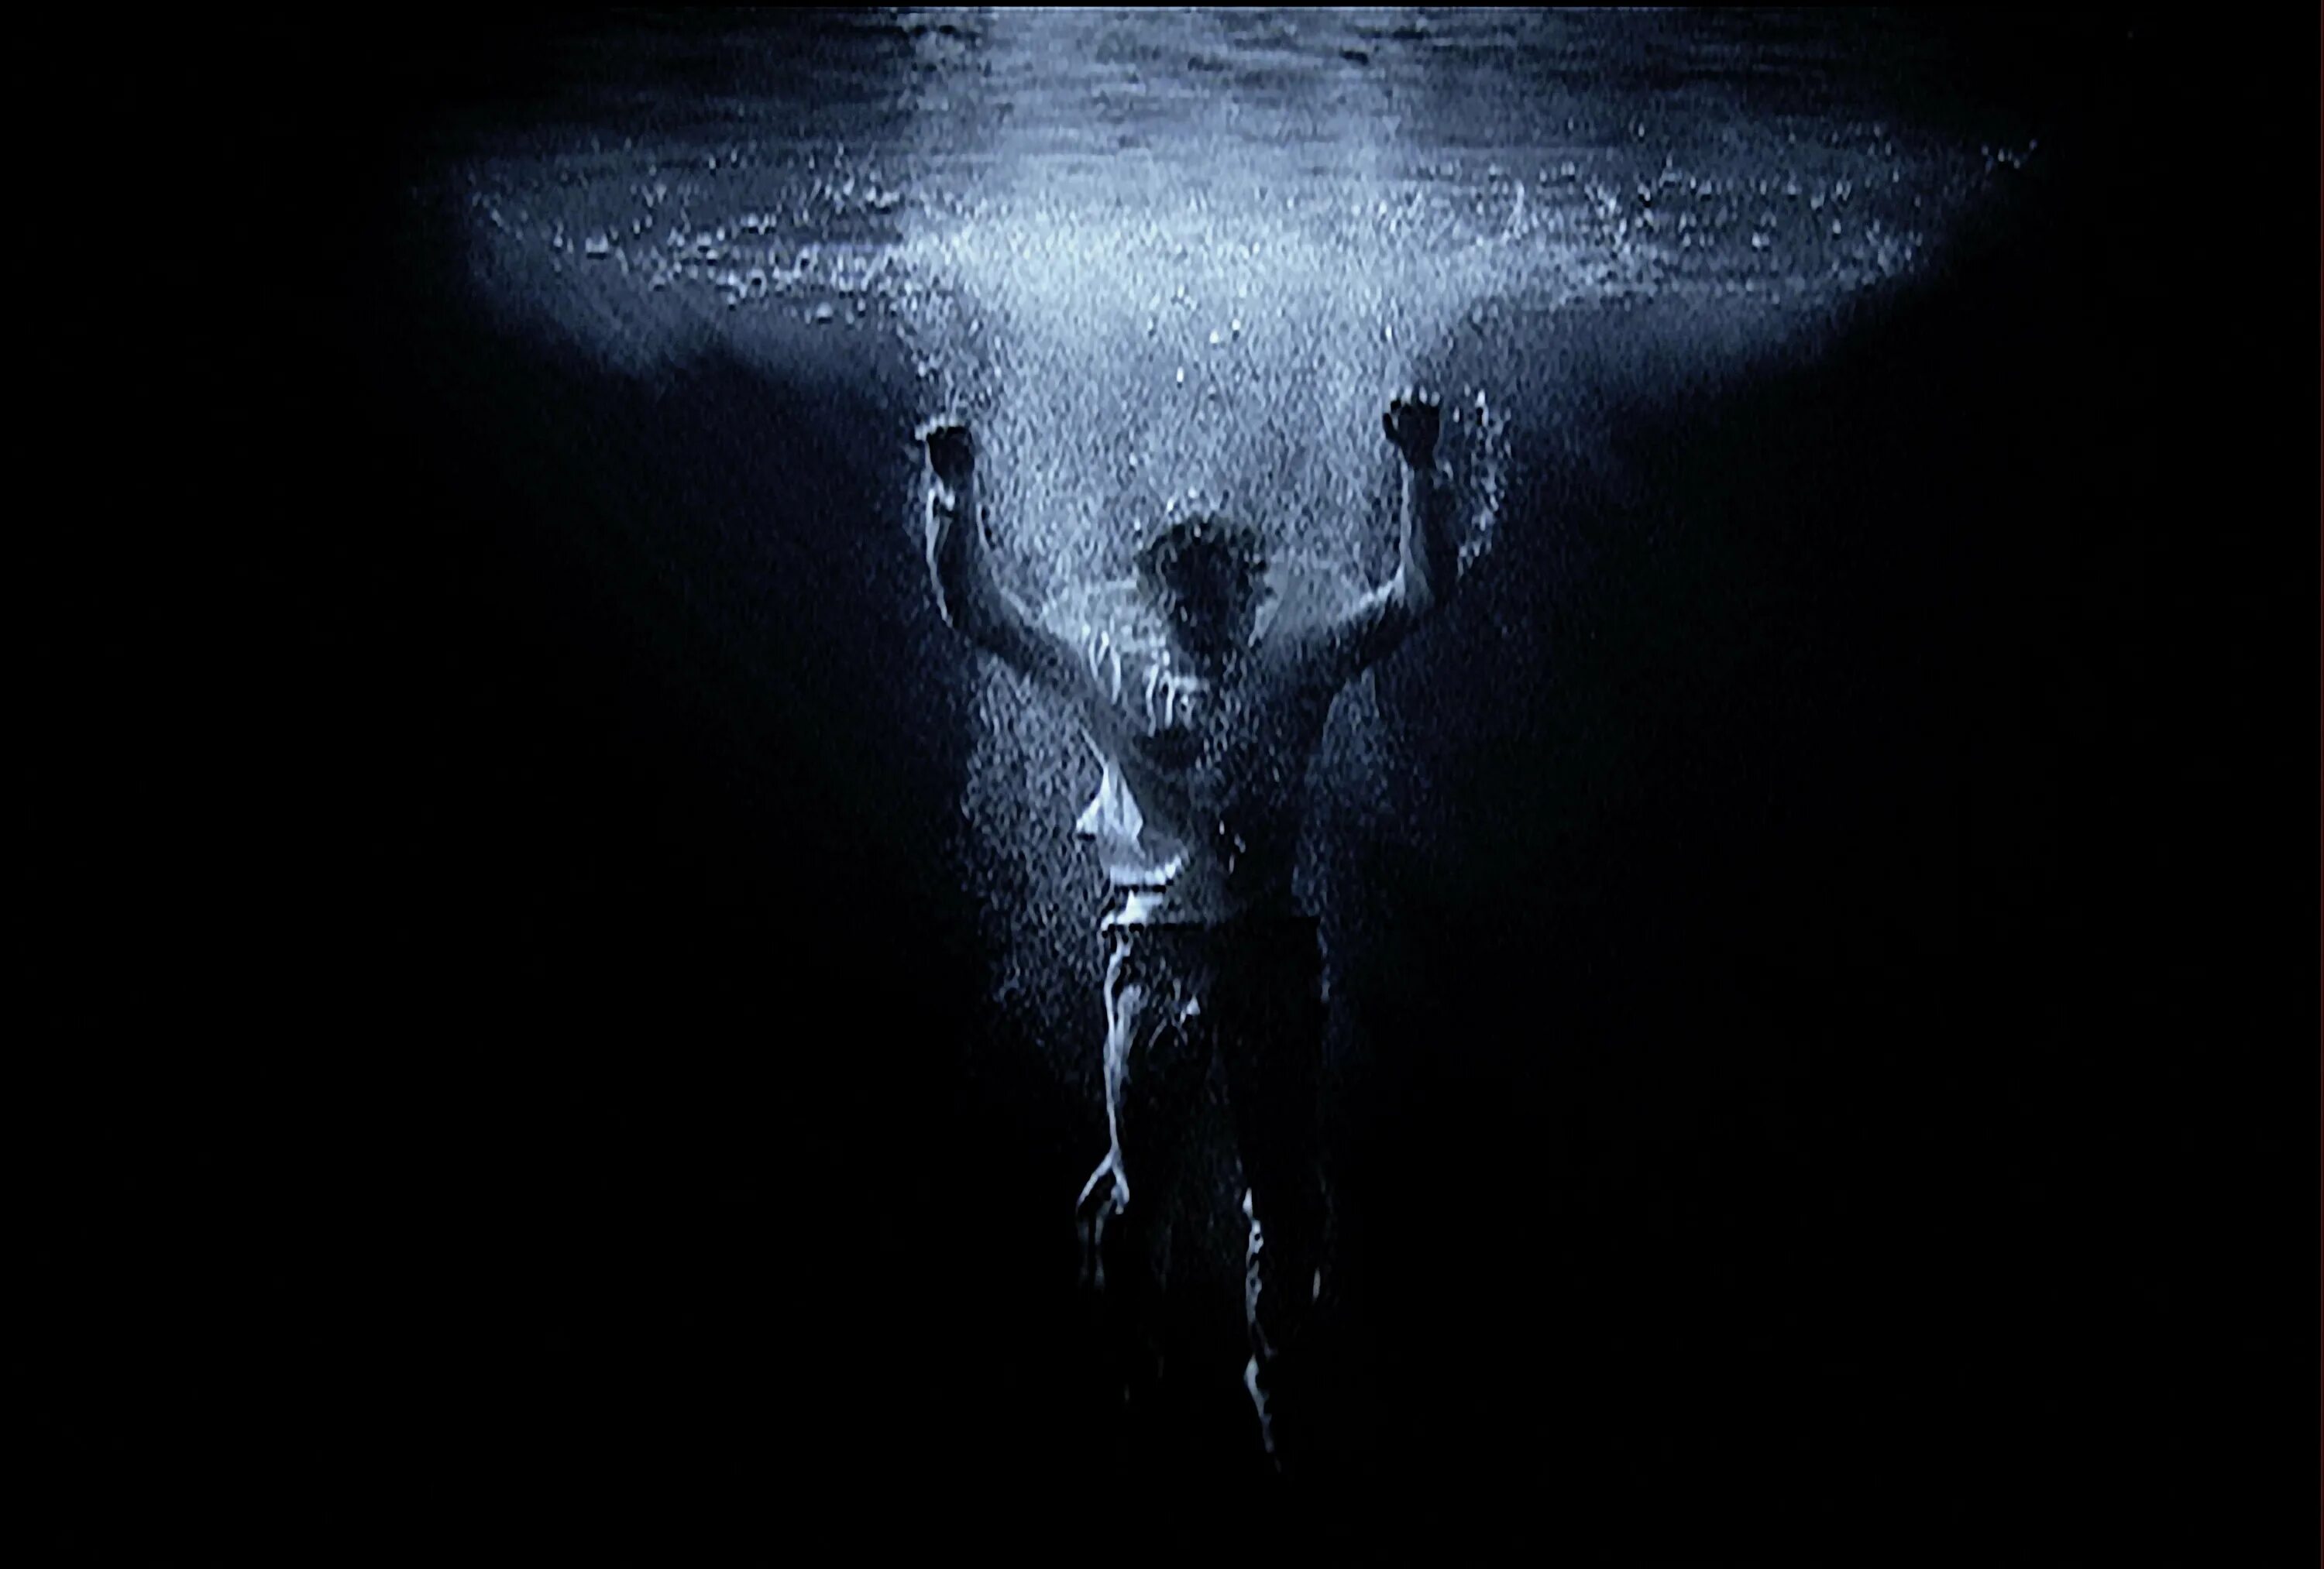 Билл Виола. Билл Виола видеоарт человек. Тонущий человек под водой. Человек тонущий во тьме. В тени падавшей на воду с раскидистых